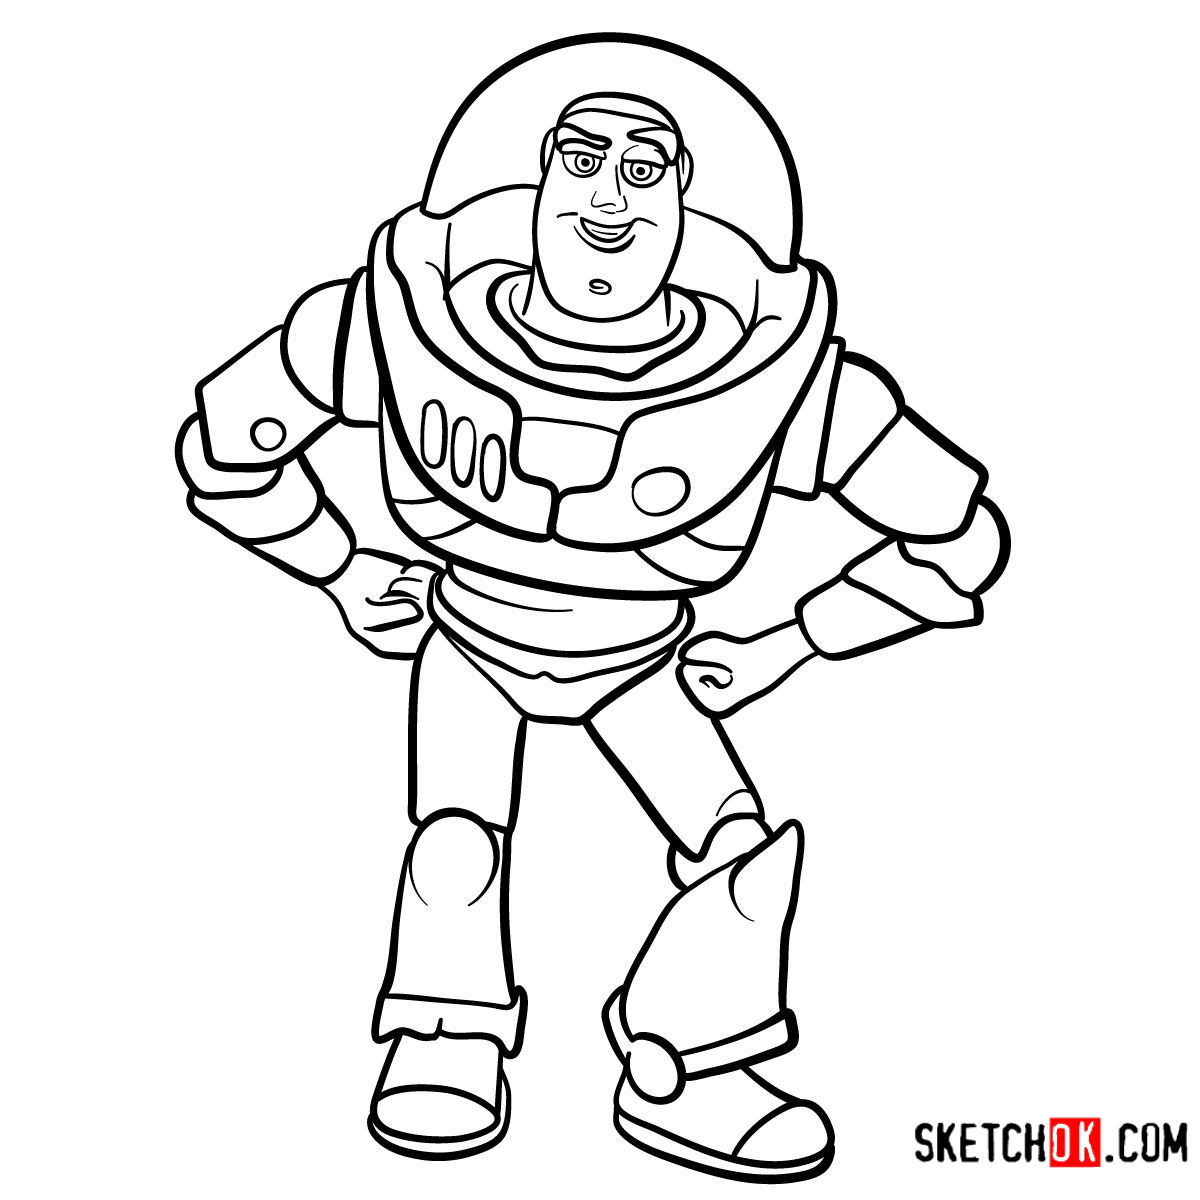 How to draw Buzz Lightyear